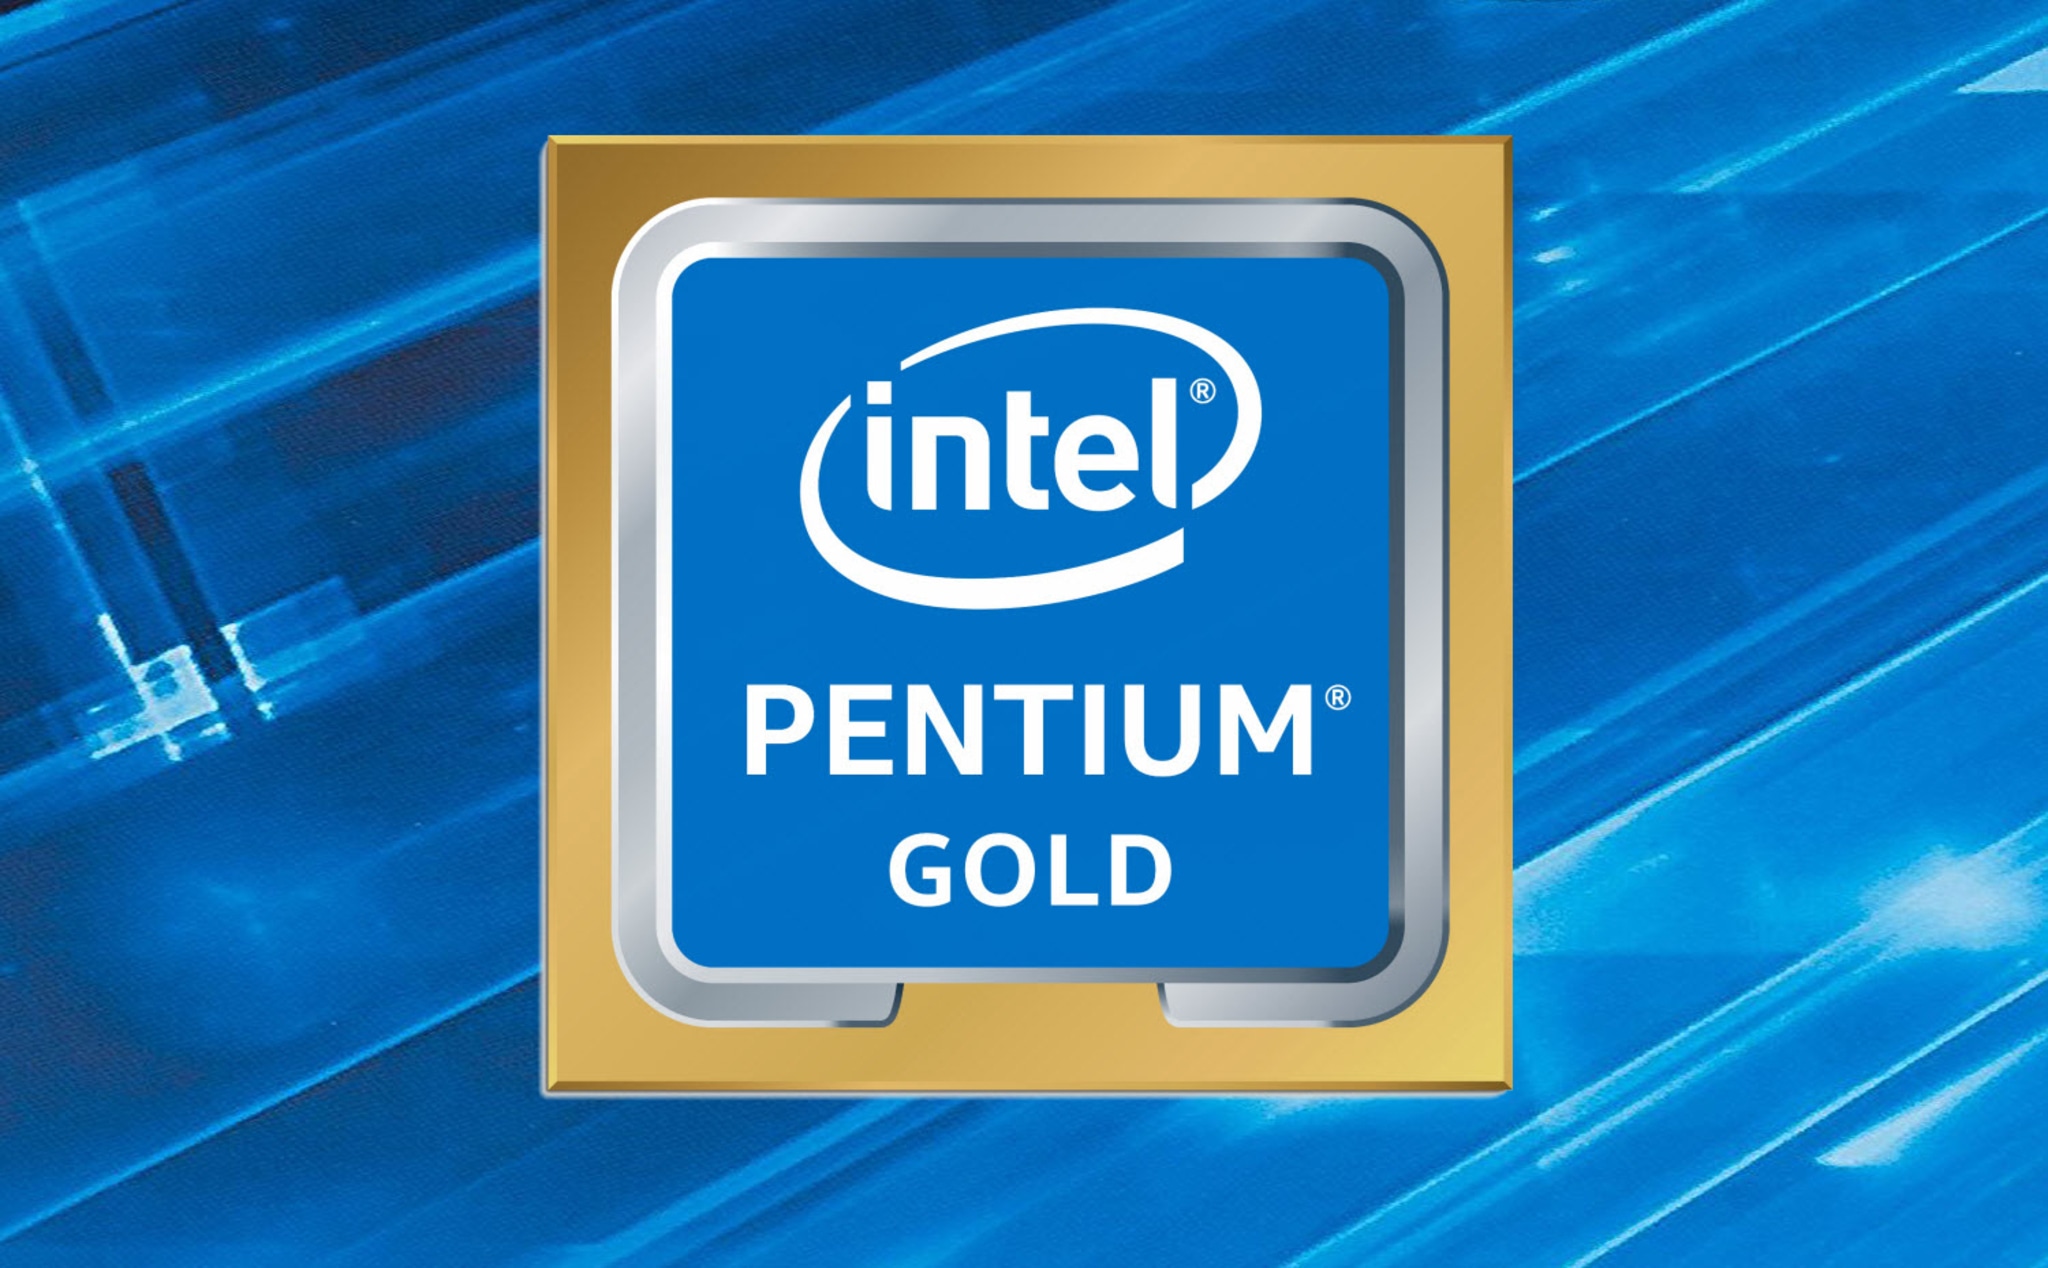 Intel Pentinum Gold G5600F sản xuất tại Việt Nam: Sự tận dụng Wafer hợp lý đến mức vô lý của Intel?